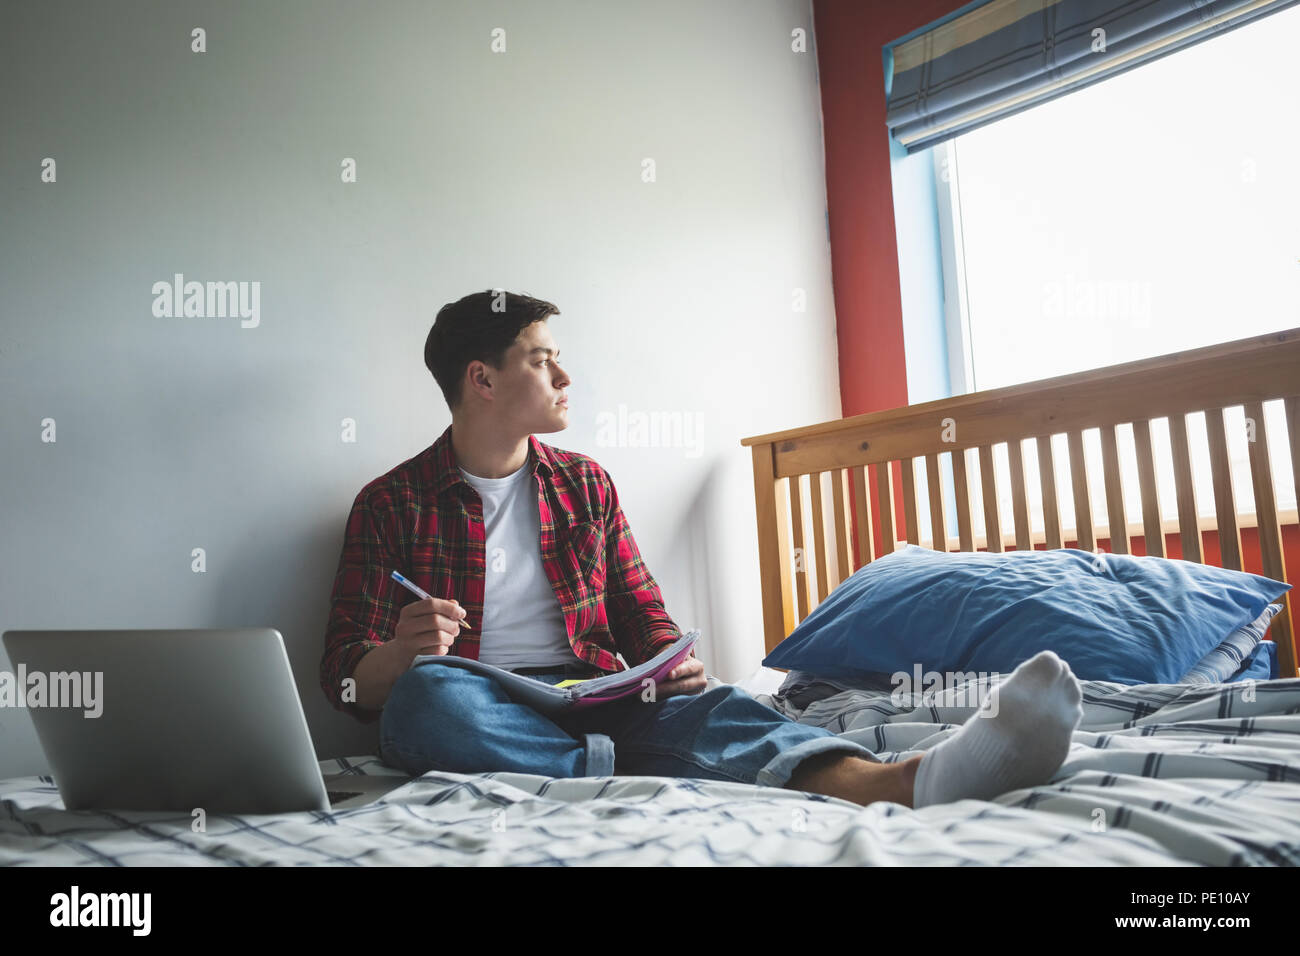 Мужик сидя на кровати делает фото своего хера фото